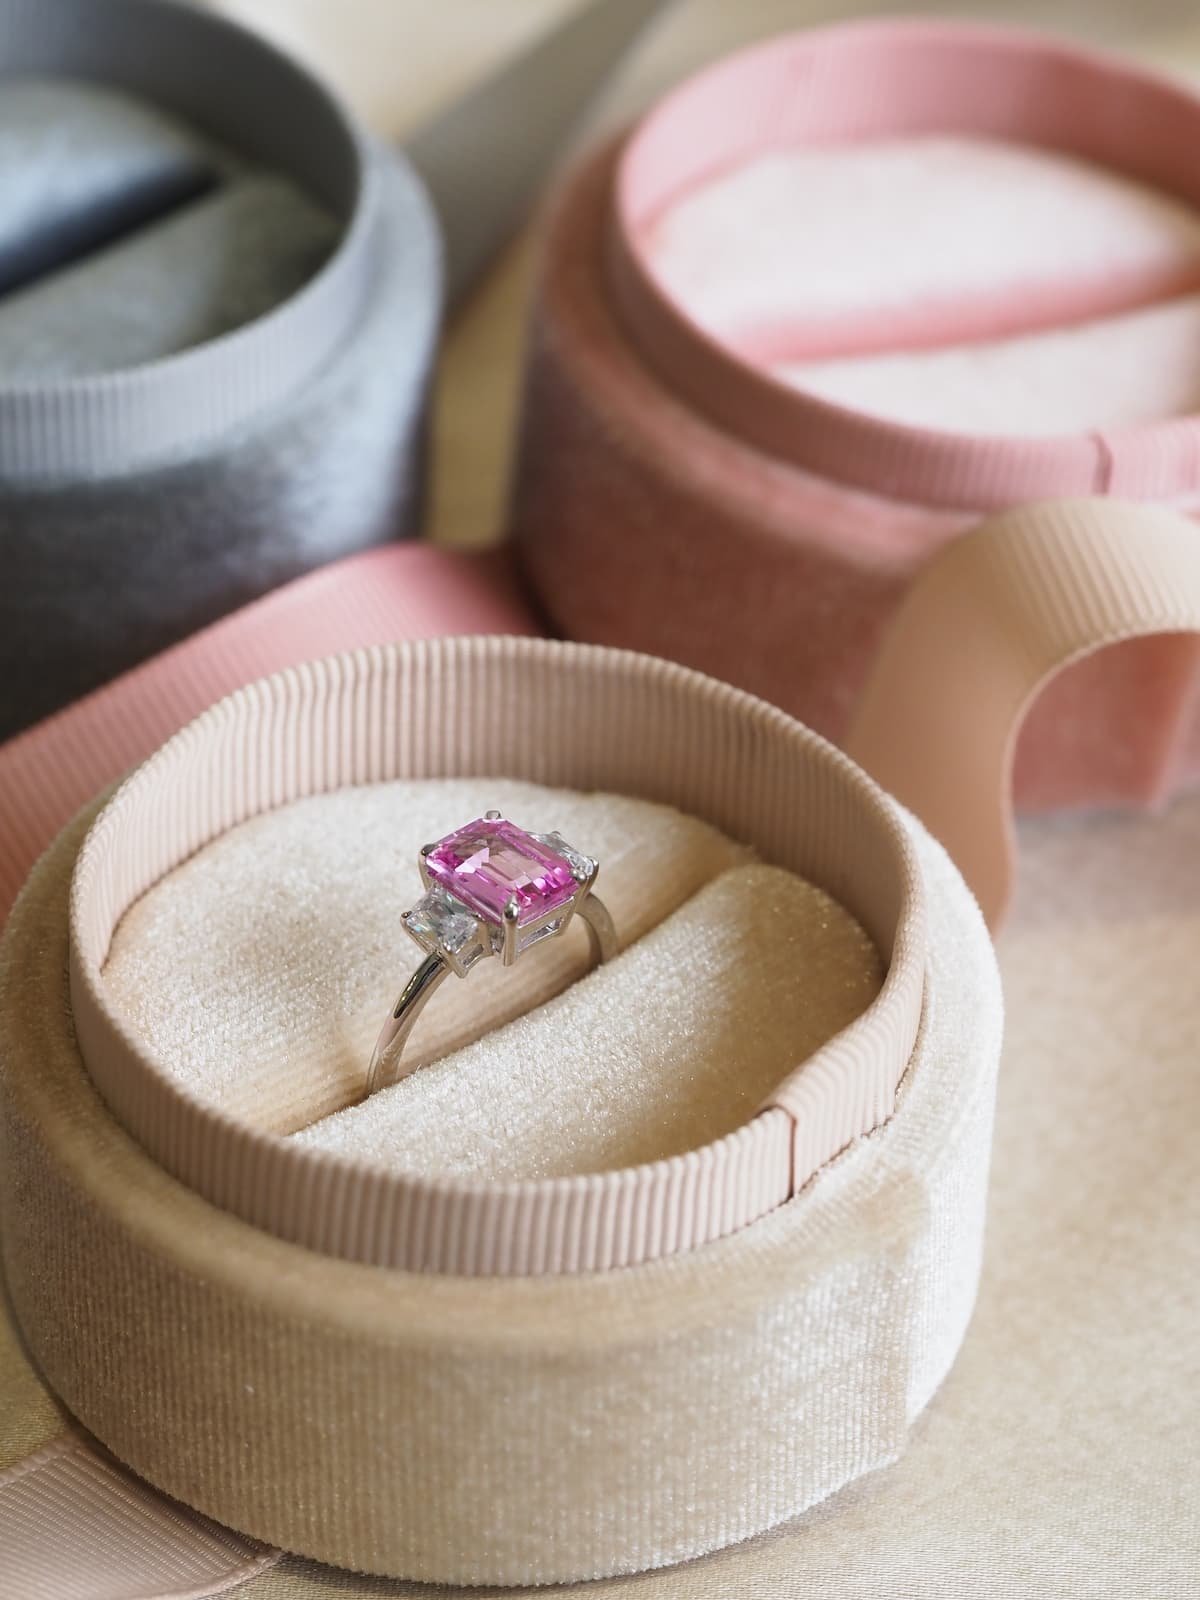 Pink LED LIGHT ENGAGEMENT WEDDING RING BOX | eBay